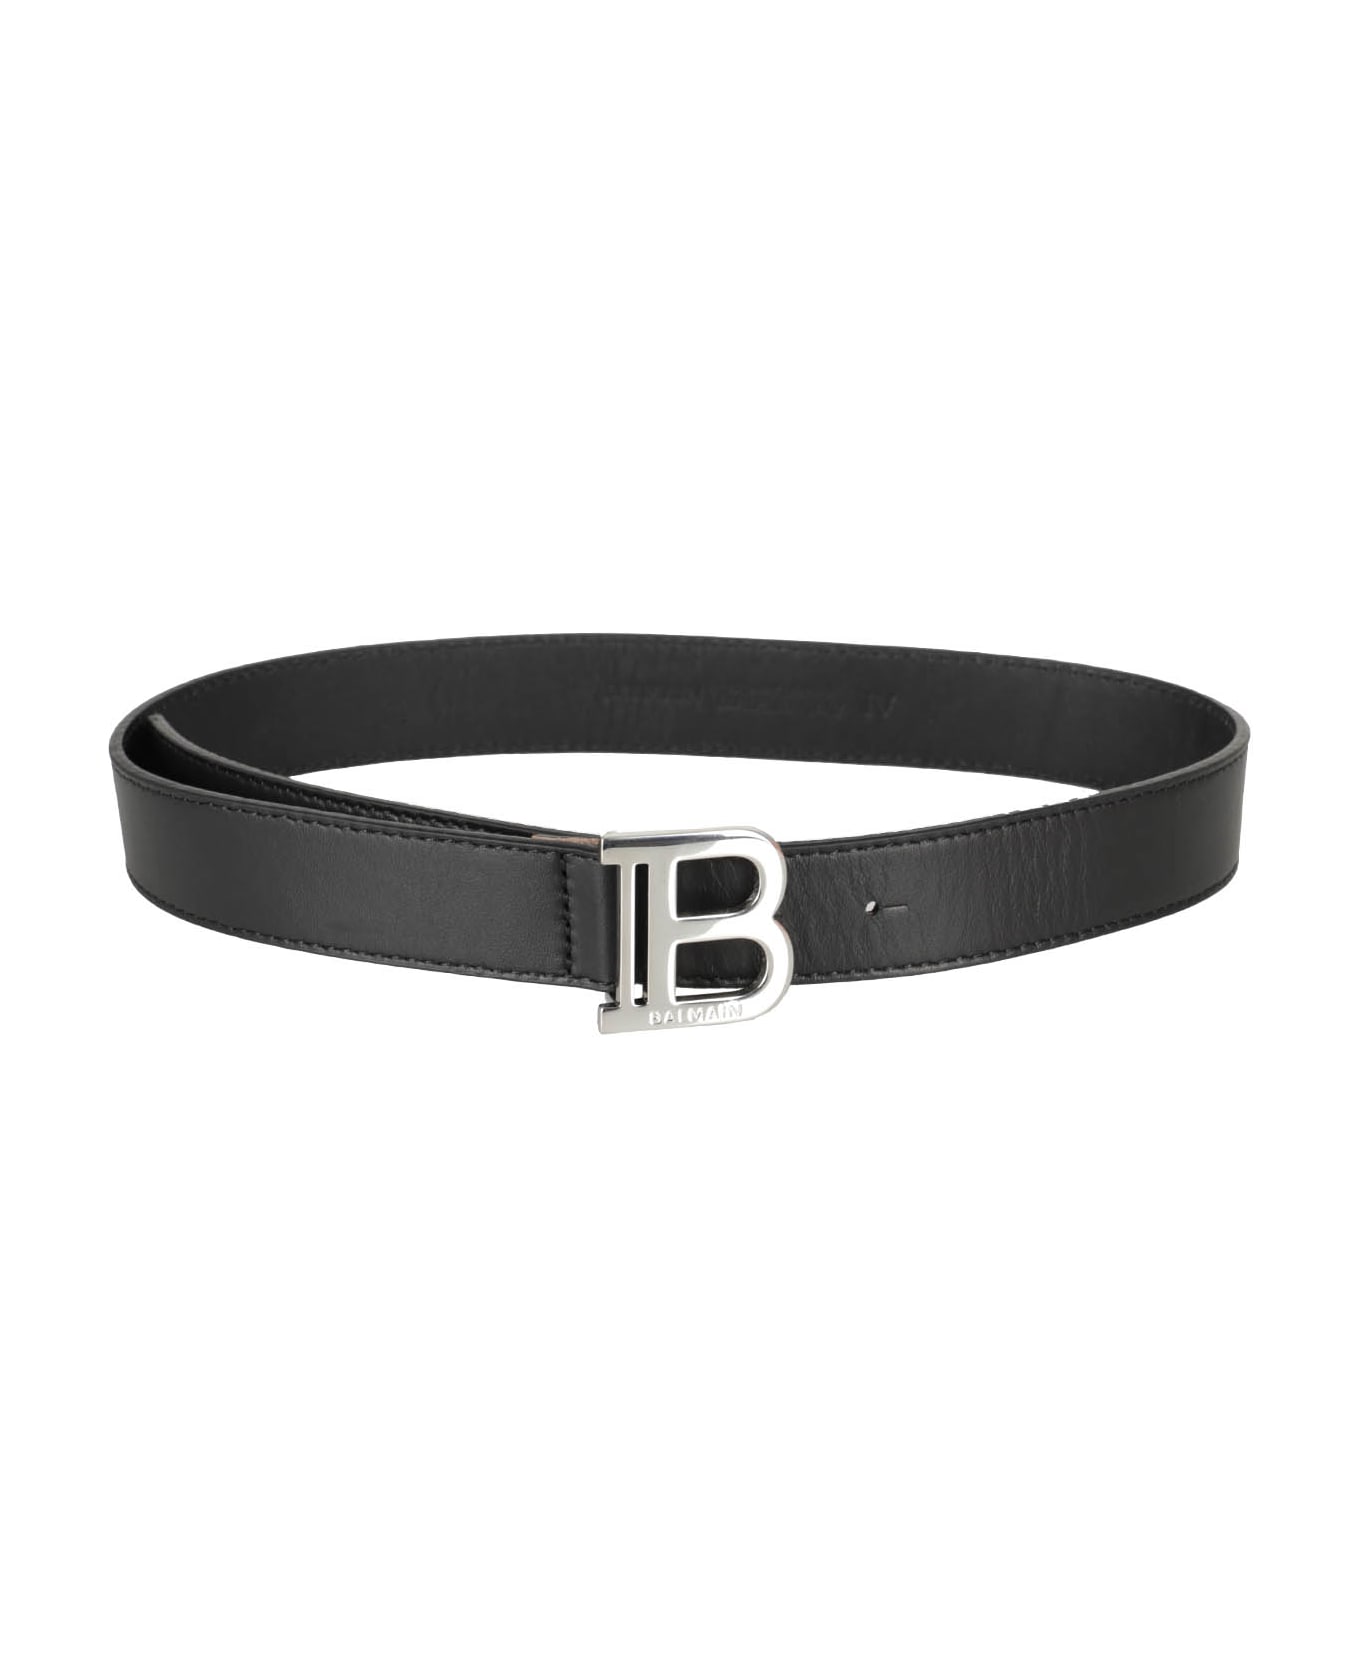 Balmain Belts - Ag Black Silver